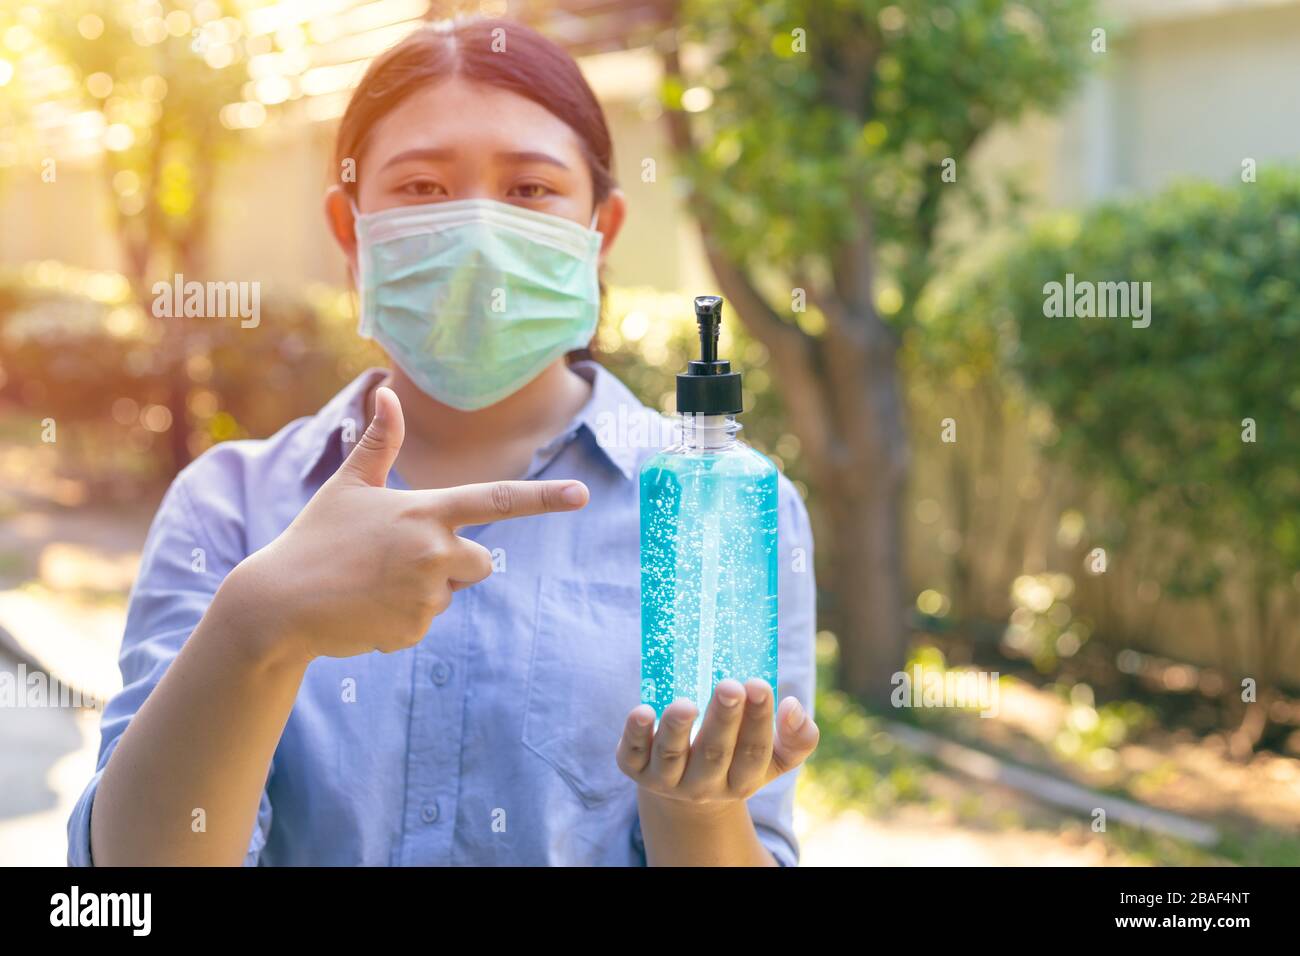 Les personnes utilisant un masque de protection jetable et un gel à main d'alcool pour se protéger contre le virus corona covid-19 Banque D'Images